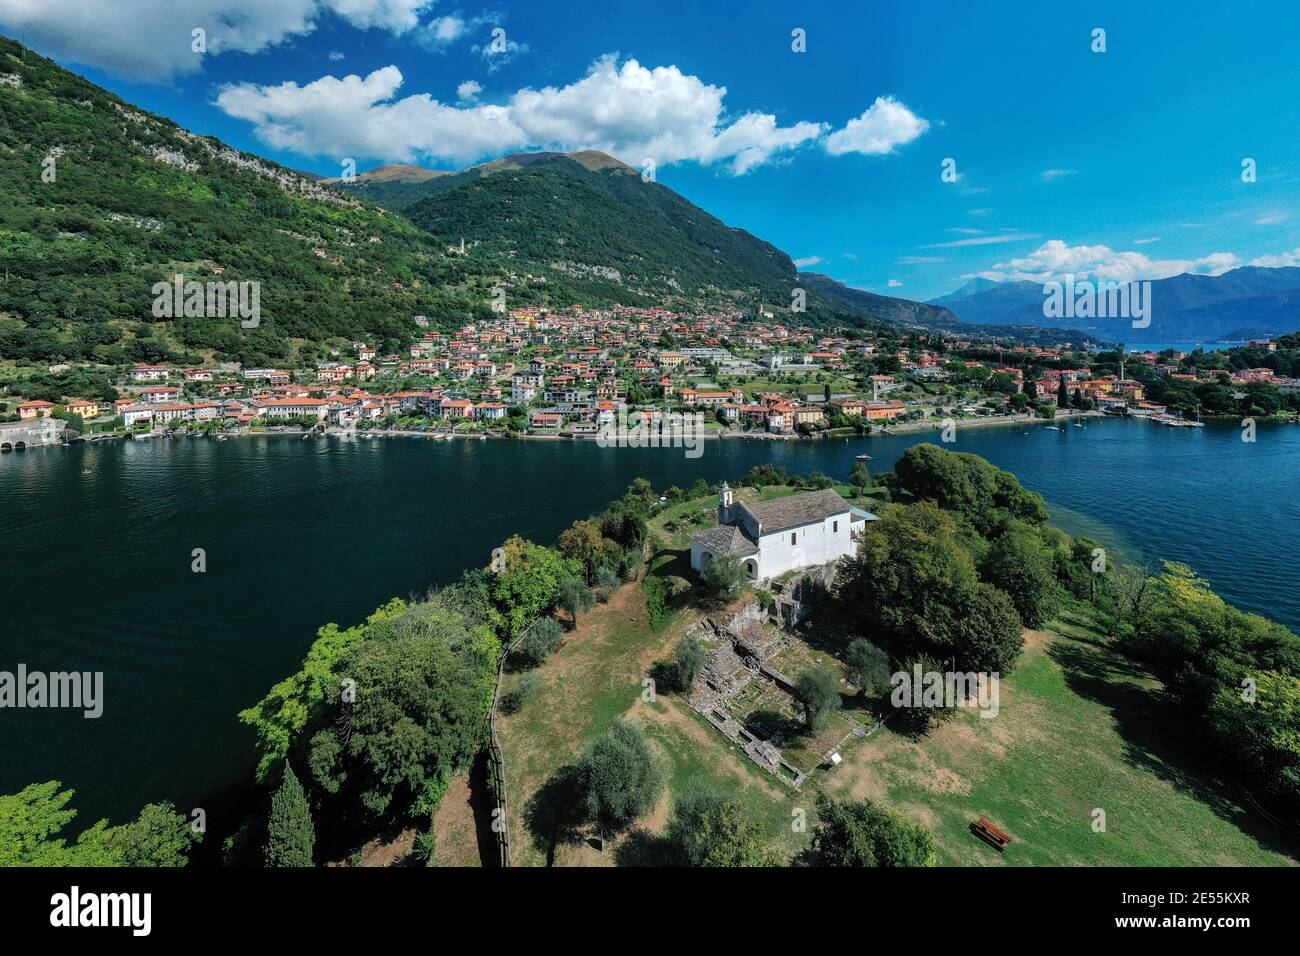 Veduta aerea dell'isola di Comacina e della città di Ossuccio durante una mattinata estiva, Lago di Como, Lombardia, Italia settentrionale. Foto Stock